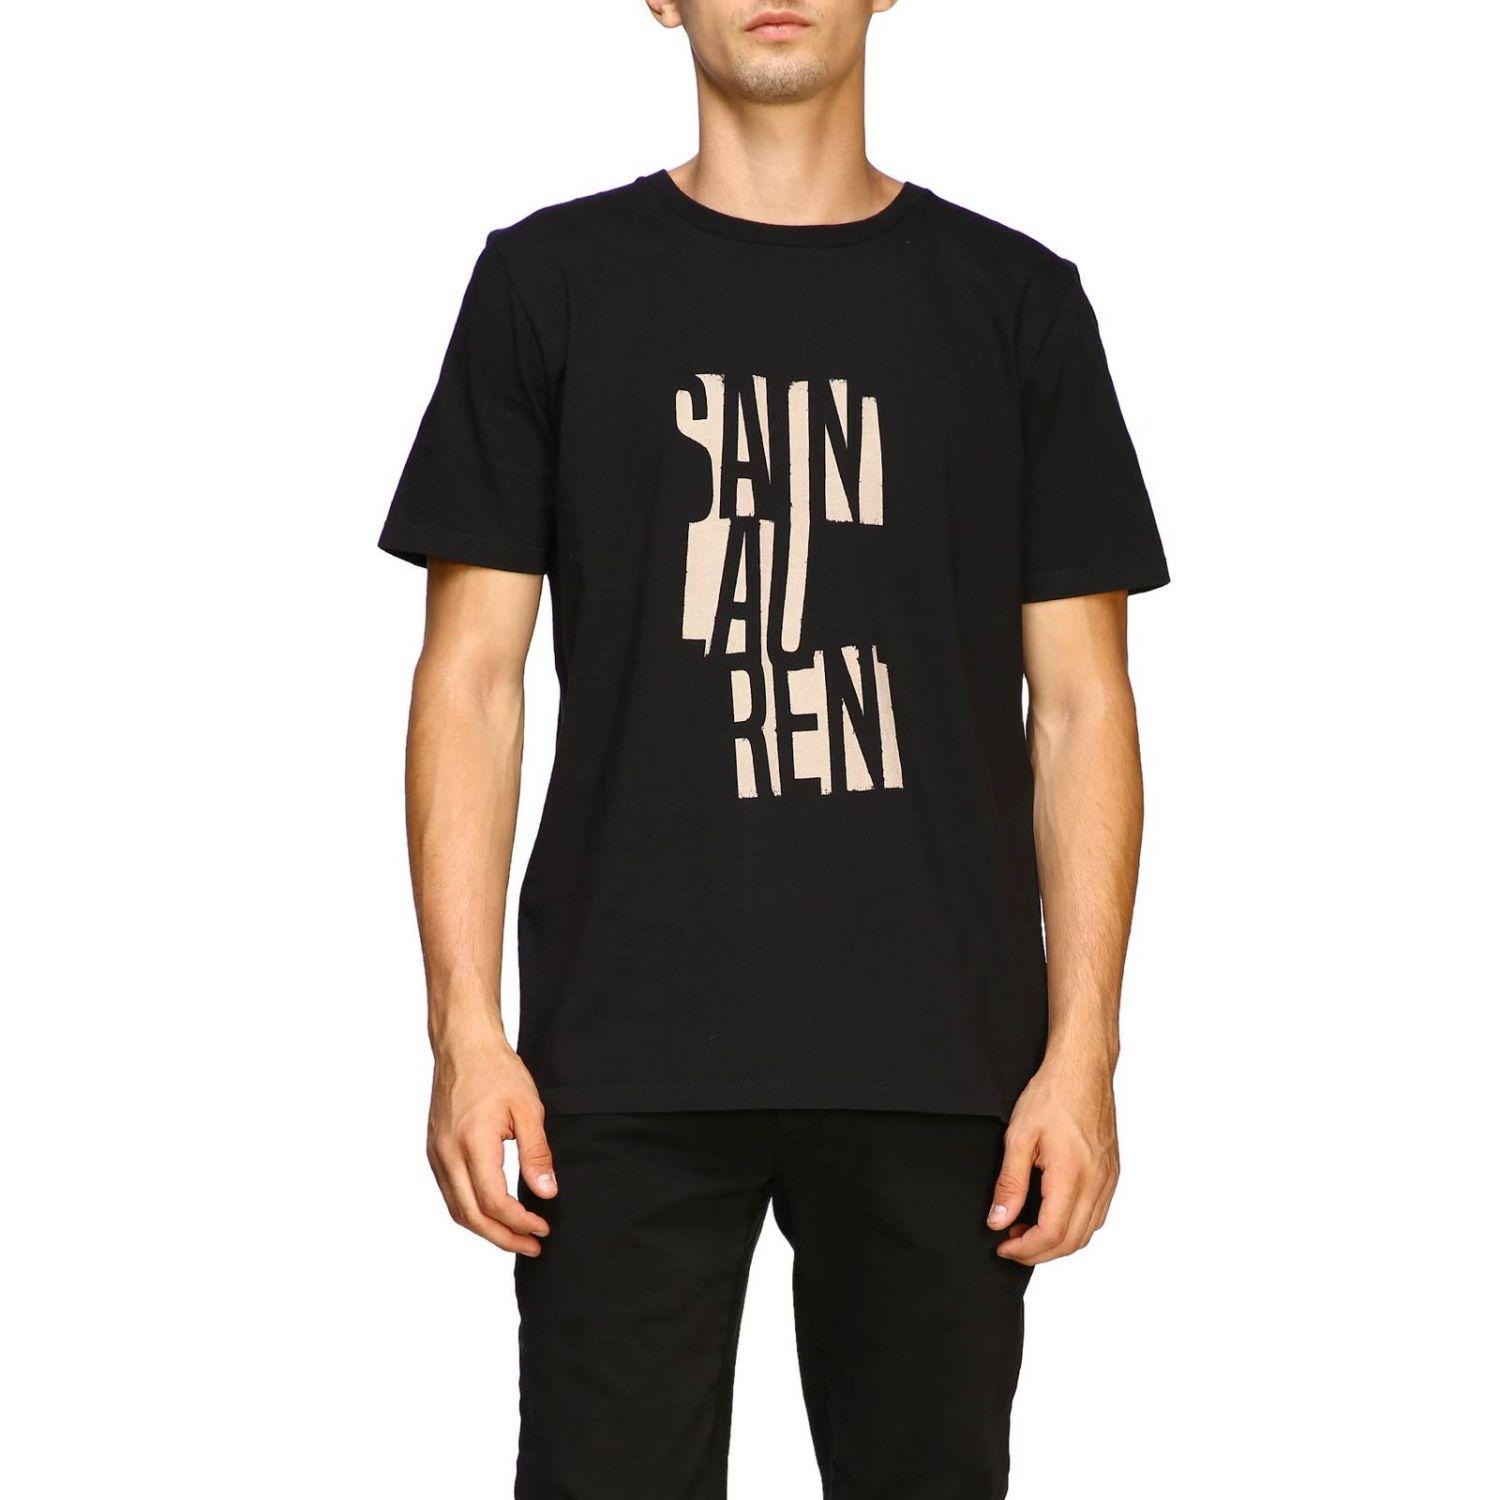 Saint Laurent Cotton Men's T-shirt in Black for Men - Lyst